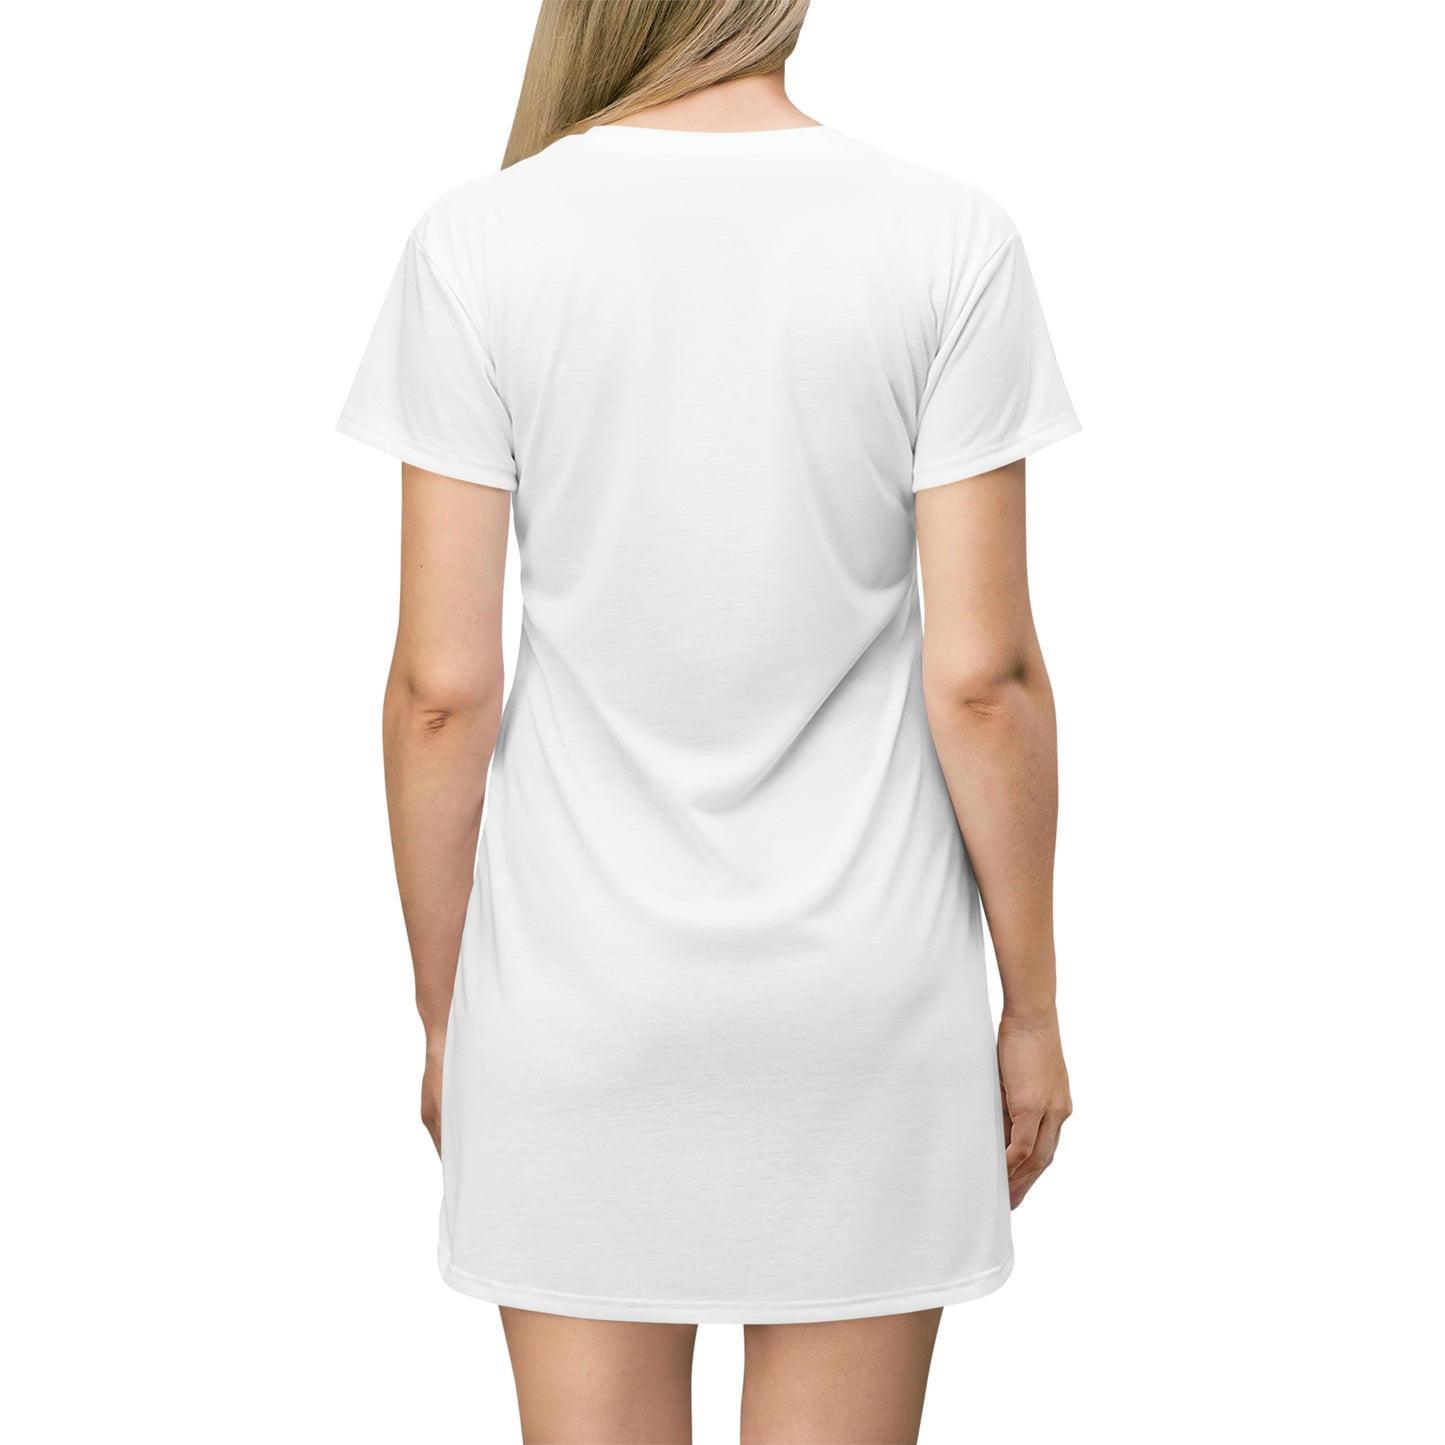 "Book Nerd" T-Shirt Dress